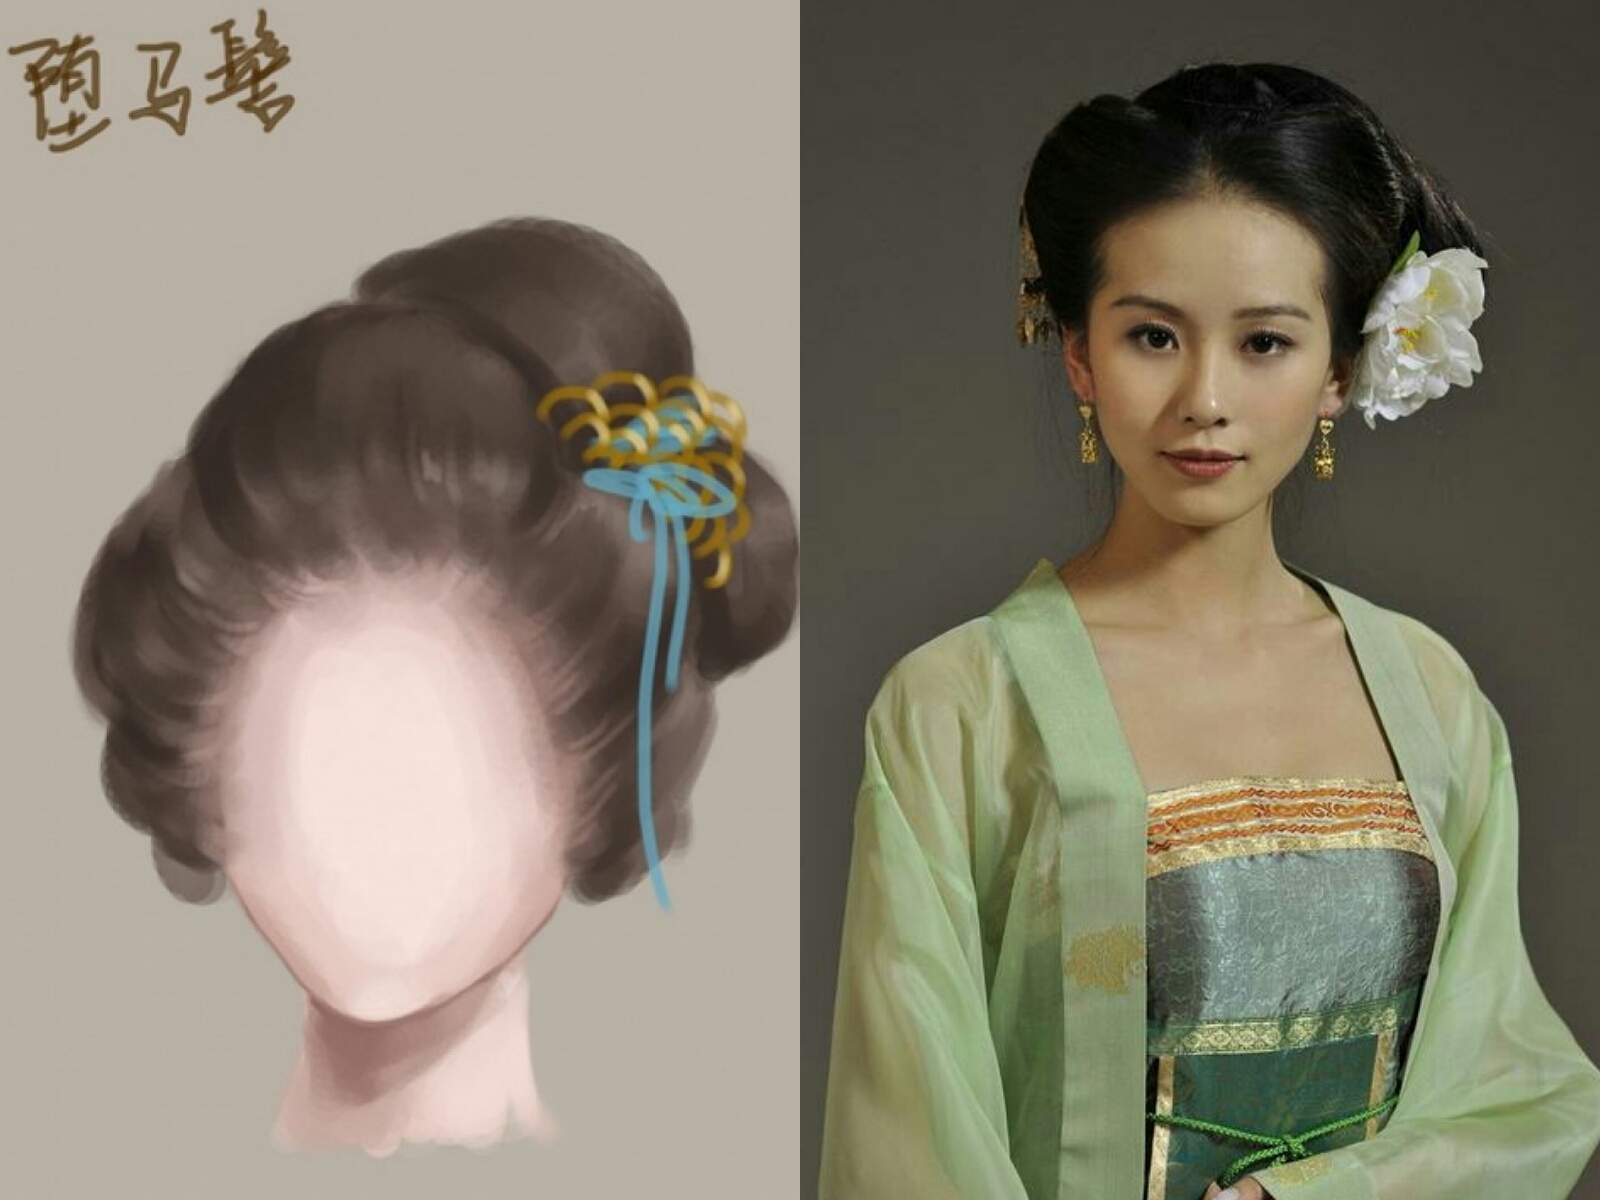 古装影视发型之宋朝贵族女子造型 - 职业技能培训课堂 - 爱读